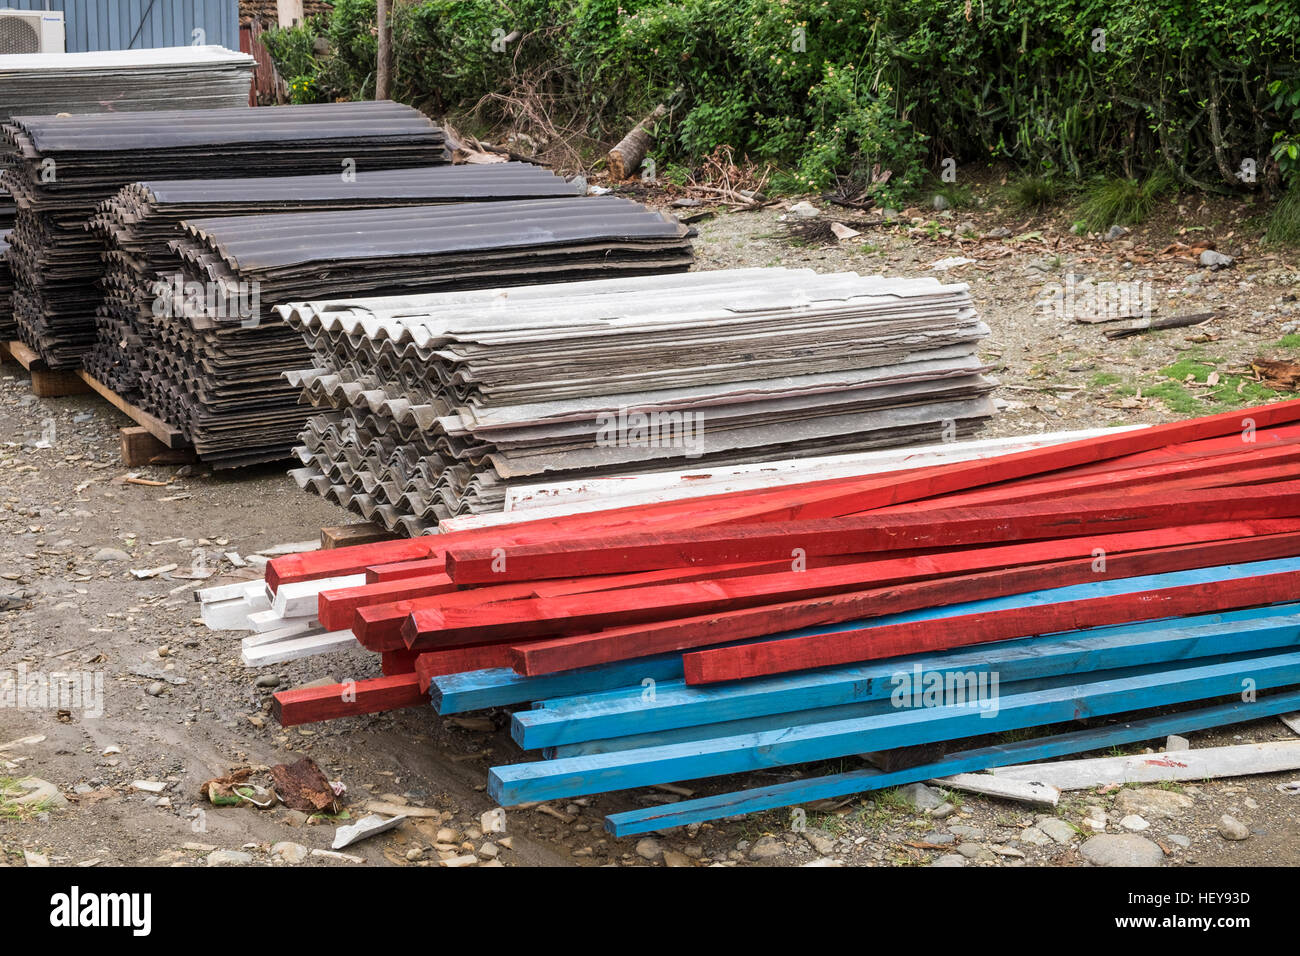 Des feuilles d'amiante d'être utilisés pour la couverture dans le cadre de l'effort de secours après l'ouragan Mathew, Yomuri, Baracoa, Cuba Banque D'Images